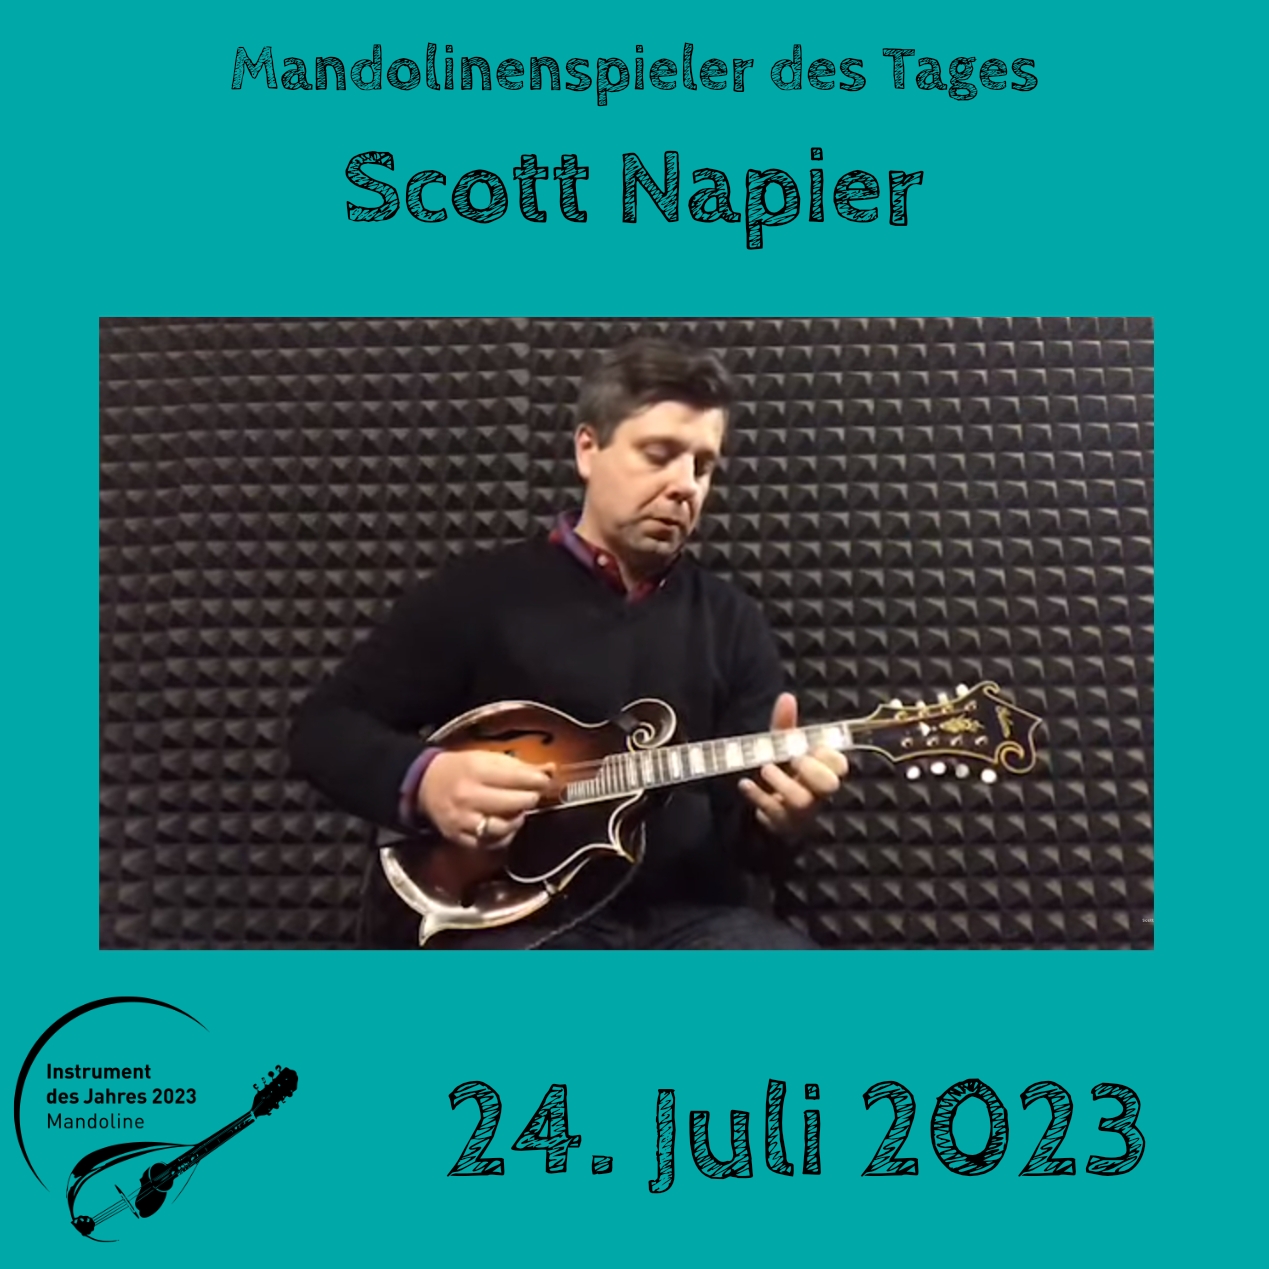 24. Juli - Scott Napier Mandoline Instrument des Jahres 2023 Mandolinenspieler Mandolinenspielerin des Tages